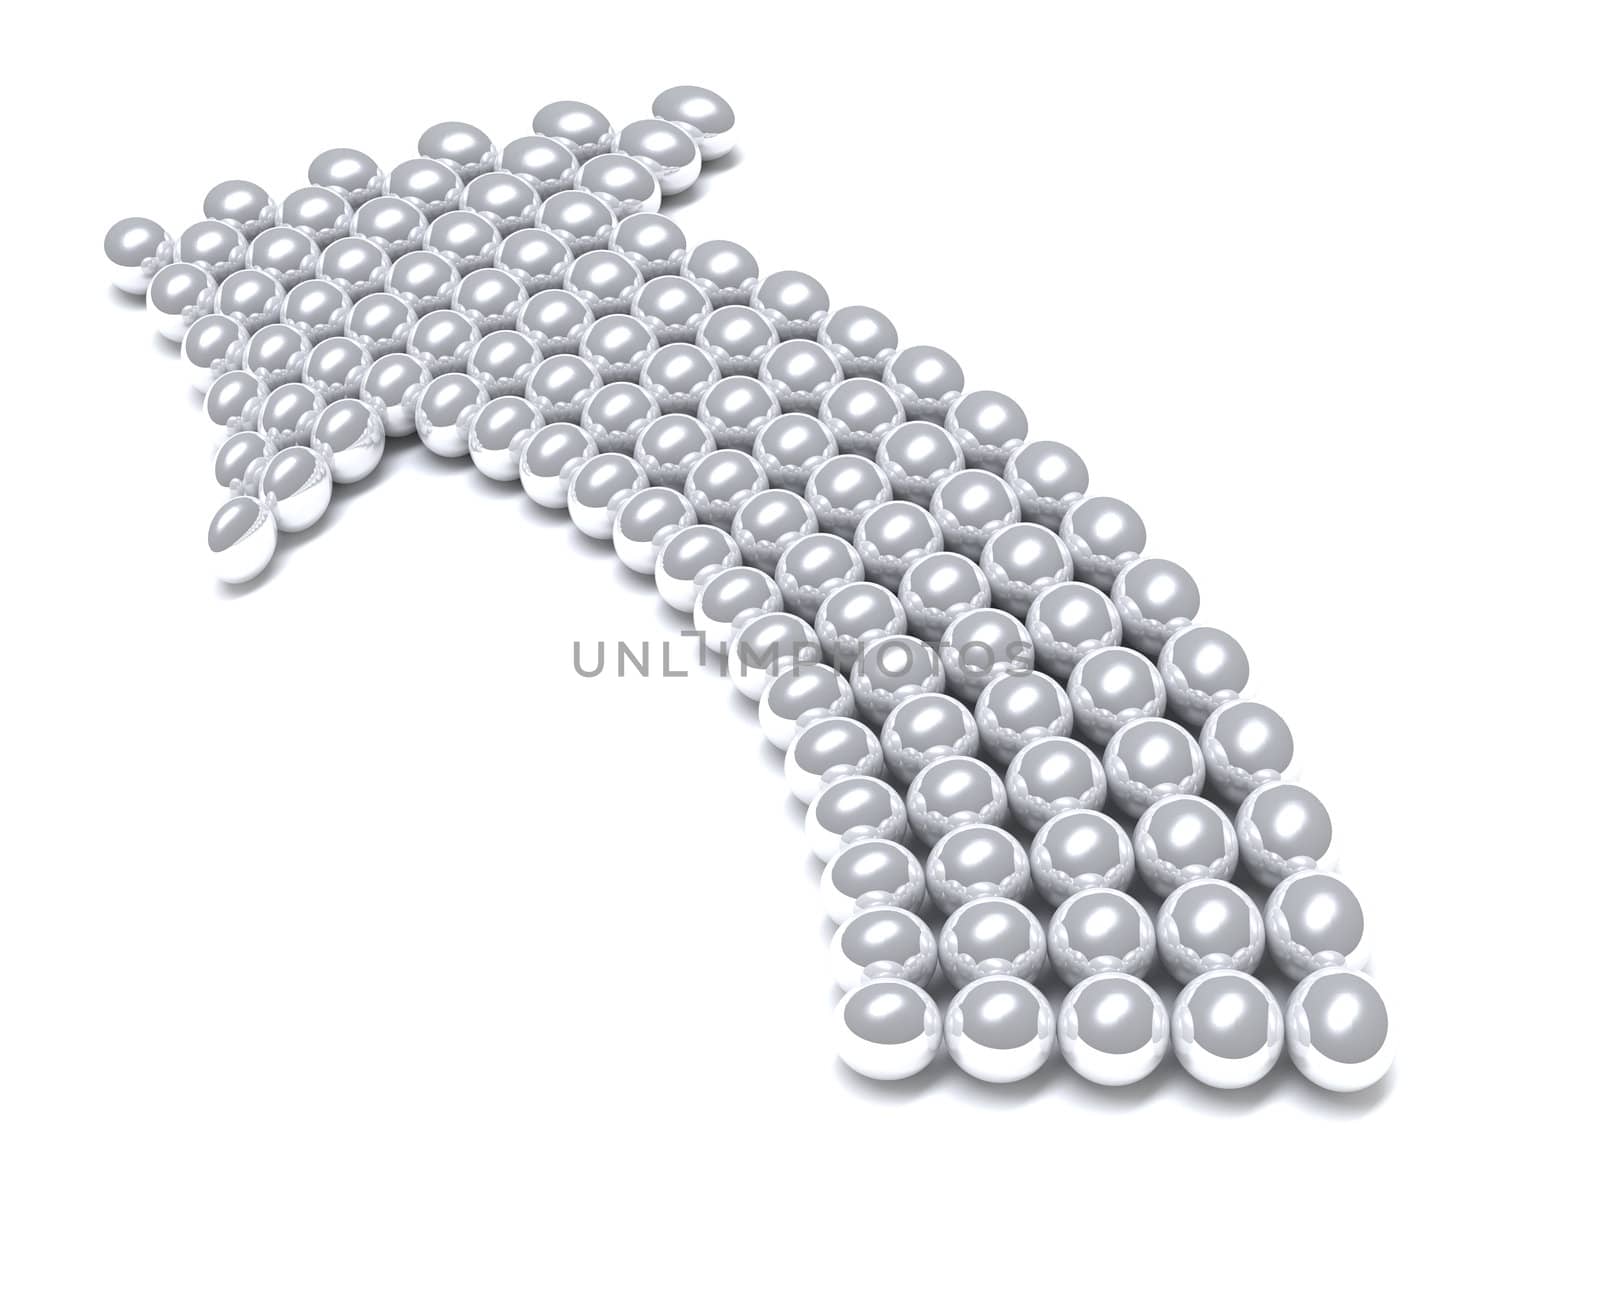 Grey arrow consisting of metal balls by Serp